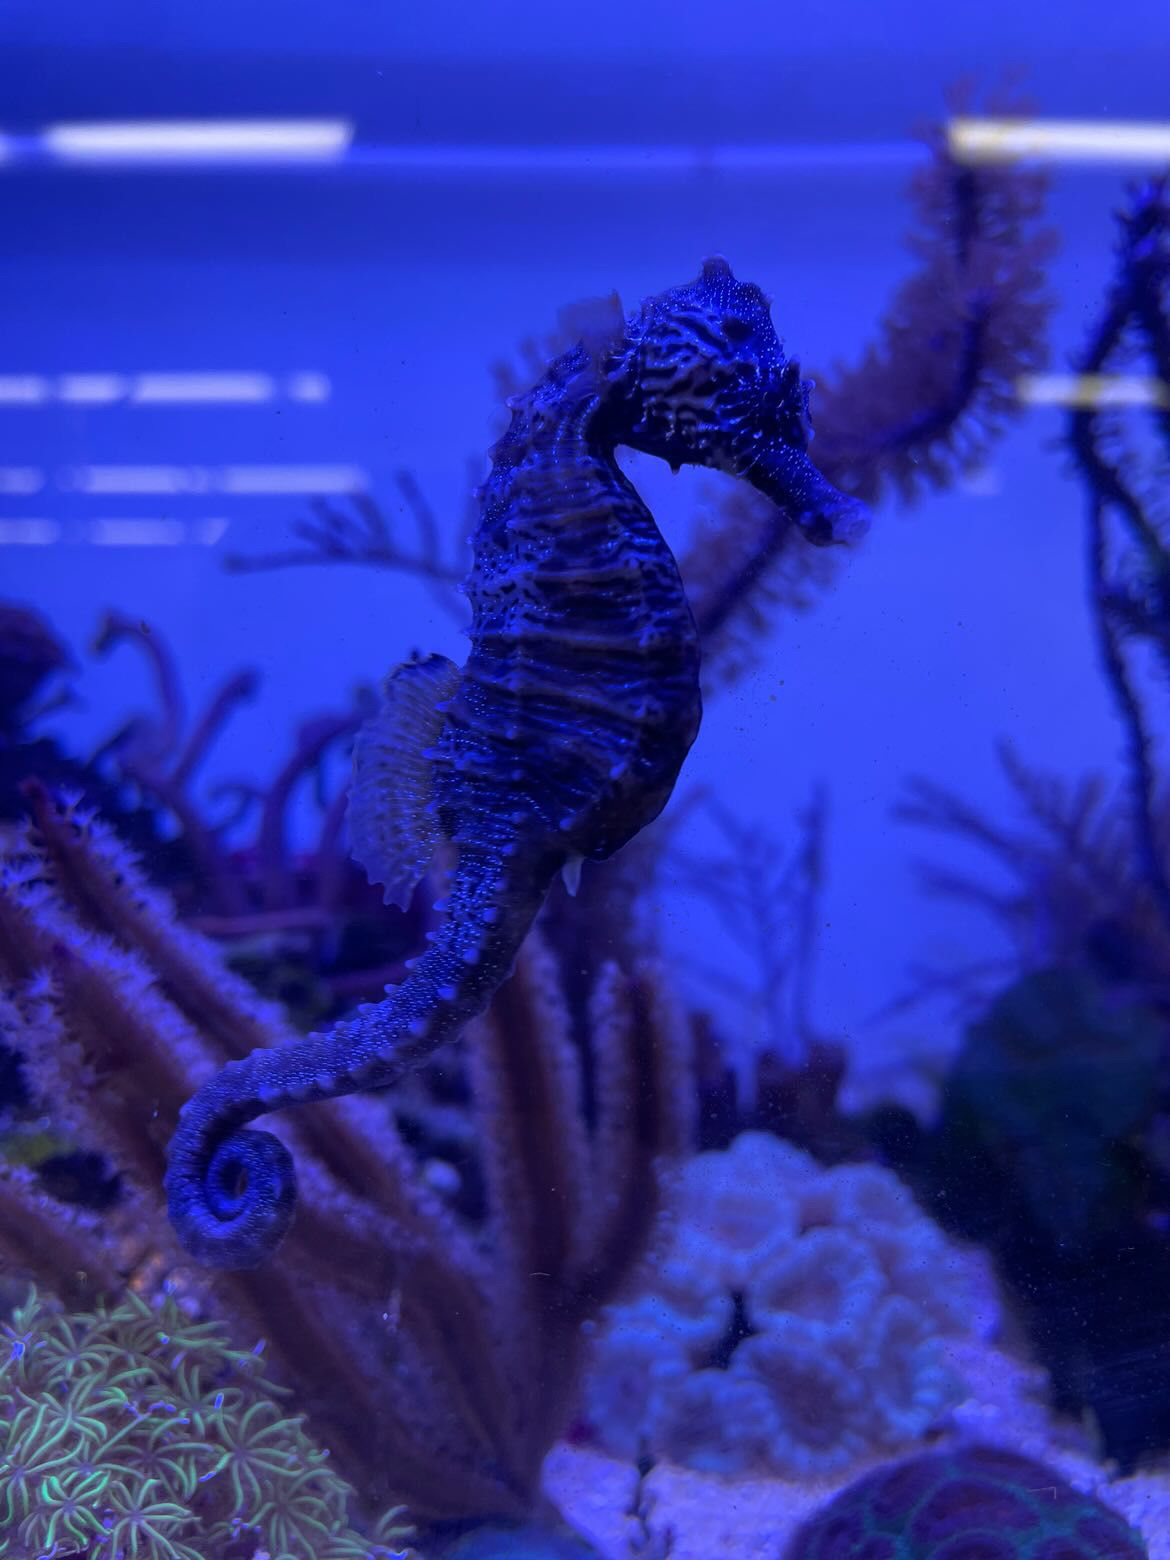 Photograph of a sea horse in an aquarium tank.